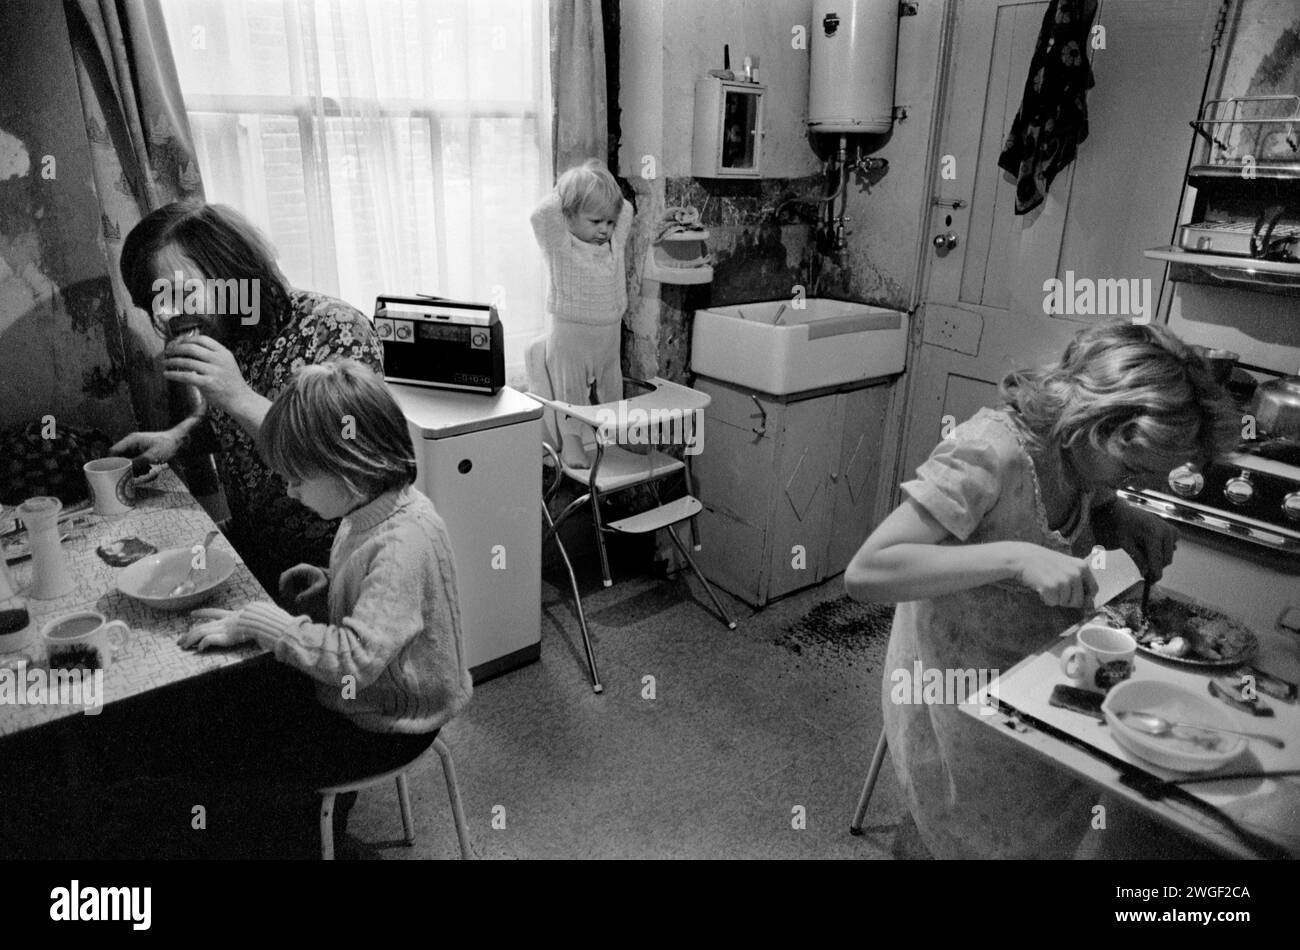 Arbeiterfamilie 1970s UK, zu Hause Fulham London 1972. Das ist ihre Küche. Sie hatten kein eigenes Bad, das man mit anderen Familien im Haus teilen konnte. Das Butler-Waschbecken wird morgens zum Waschen des Gesichts verwendet. Der Küchentisch ist nicht groß genug, um herumsitzen zu können. Mutter benutzt den kleinen Tisch, wenn sie alle zusammen essen. Baby im Hochstuhl. HOMER SYKES Stockfoto